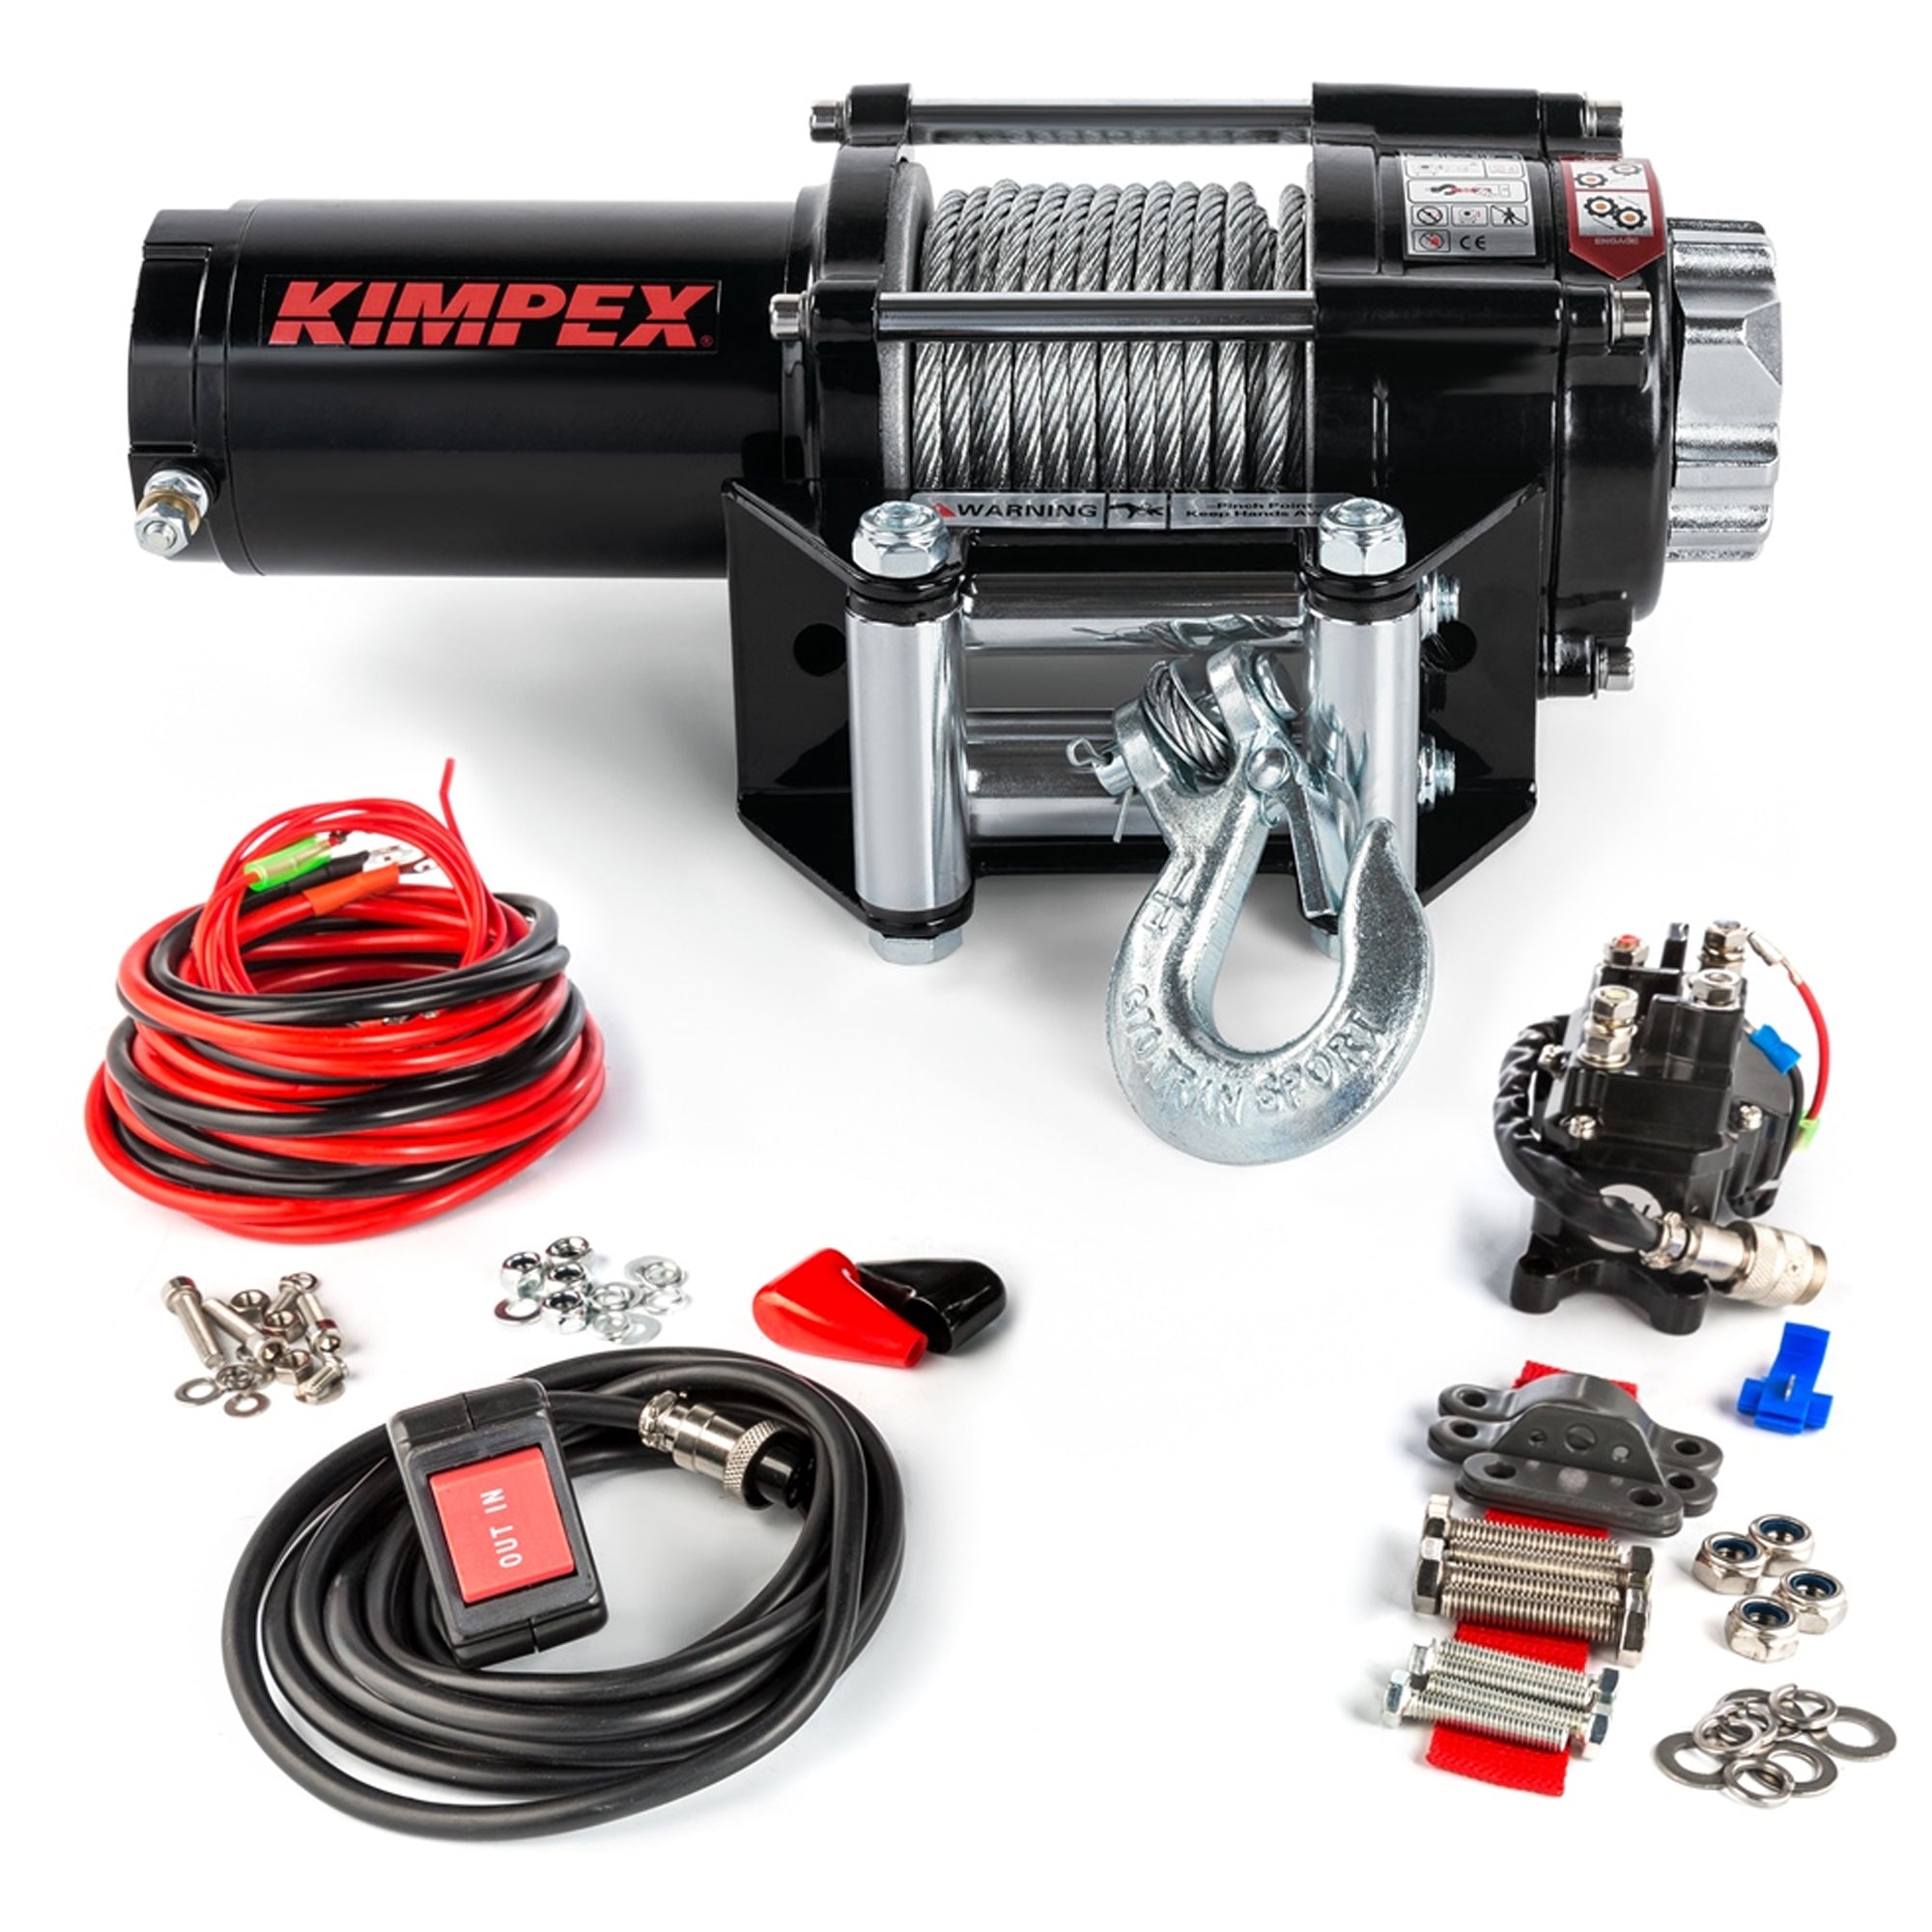 Kimpex 458211 Winch